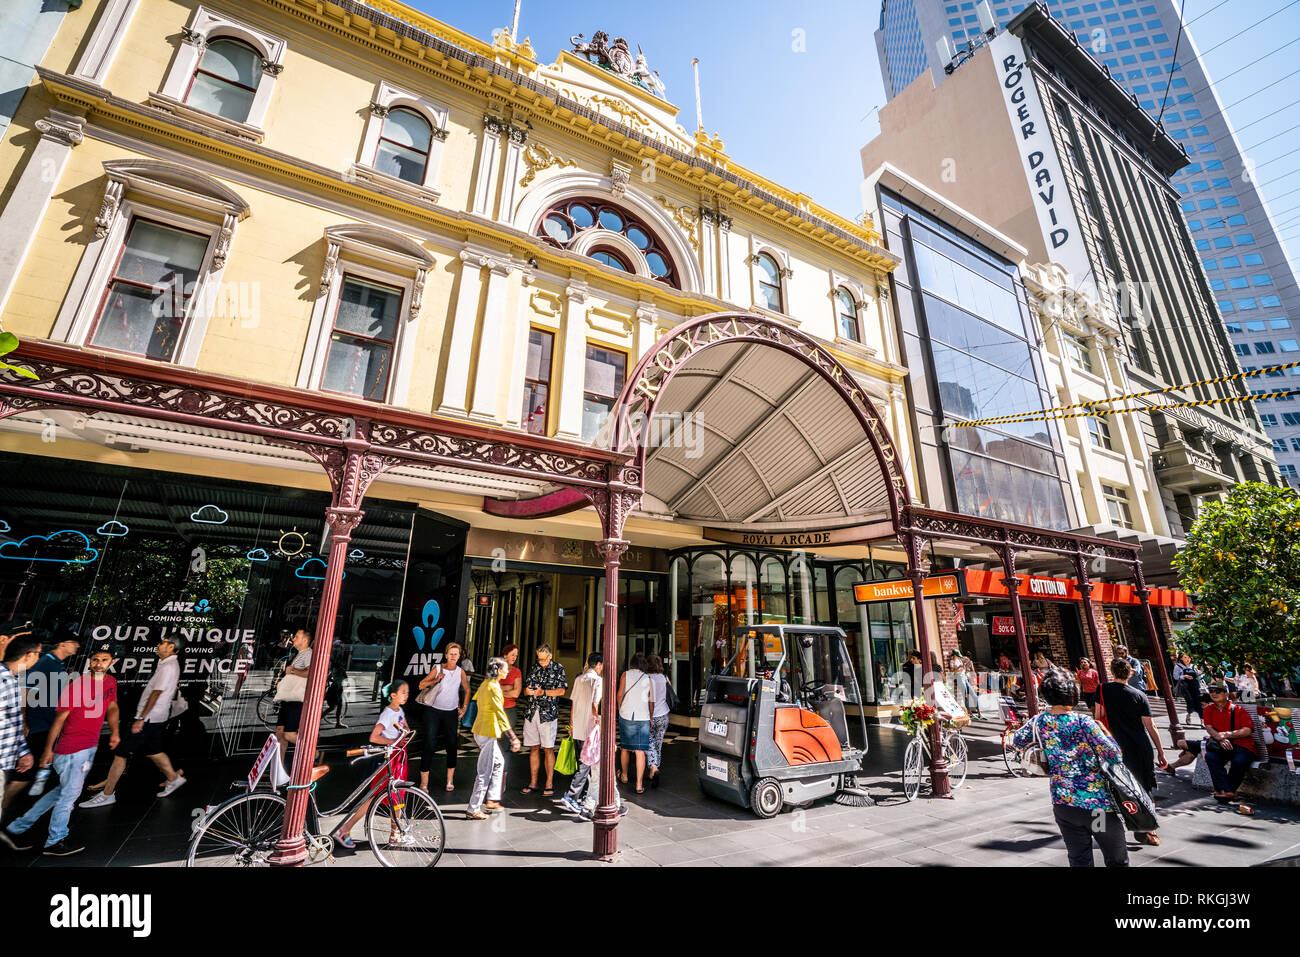 El 3 de enero de 2019, Melbourne, Australia : Royal Arcade edificio vista de entrada y la fachada en Bourke Street Melbourne Australia Foto de stock